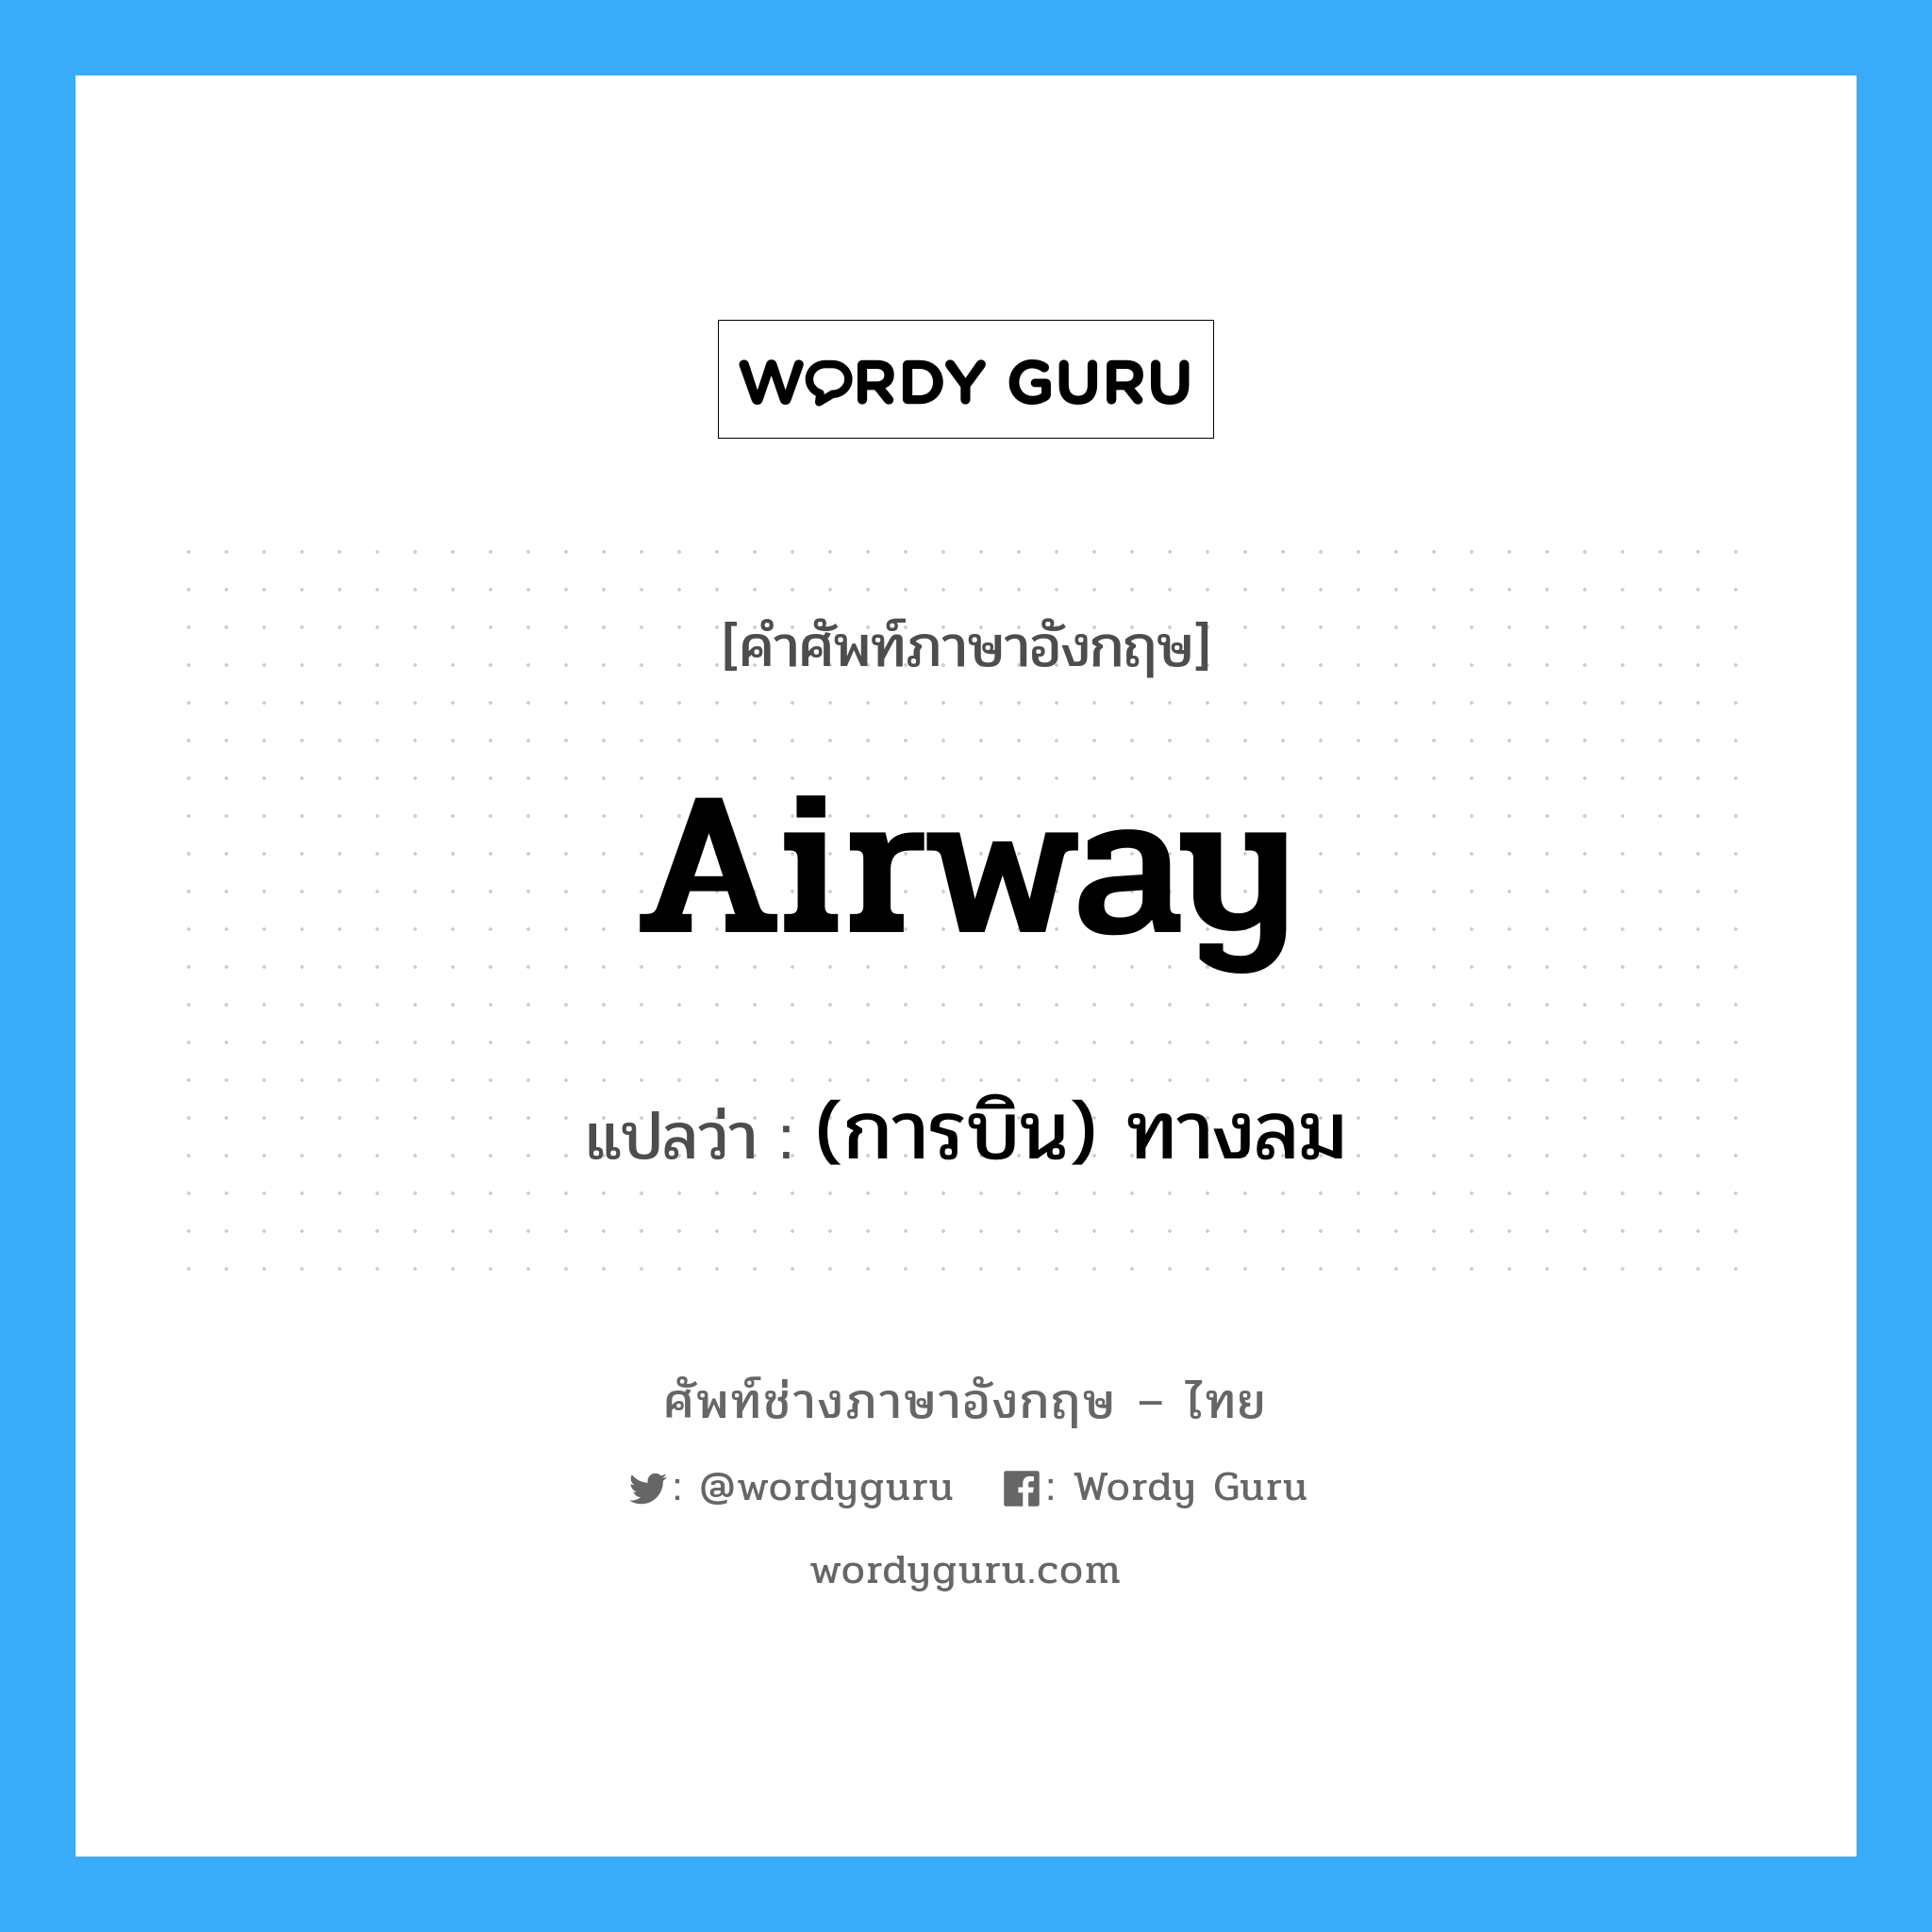 (การบิน) ทางลม ภาษาอังกฤษ?, คำศัพท์ช่างภาษาอังกฤษ - ไทย (การบิน) ทางลม คำศัพท์ภาษาอังกฤษ (การบิน) ทางลม แปลว่า airway